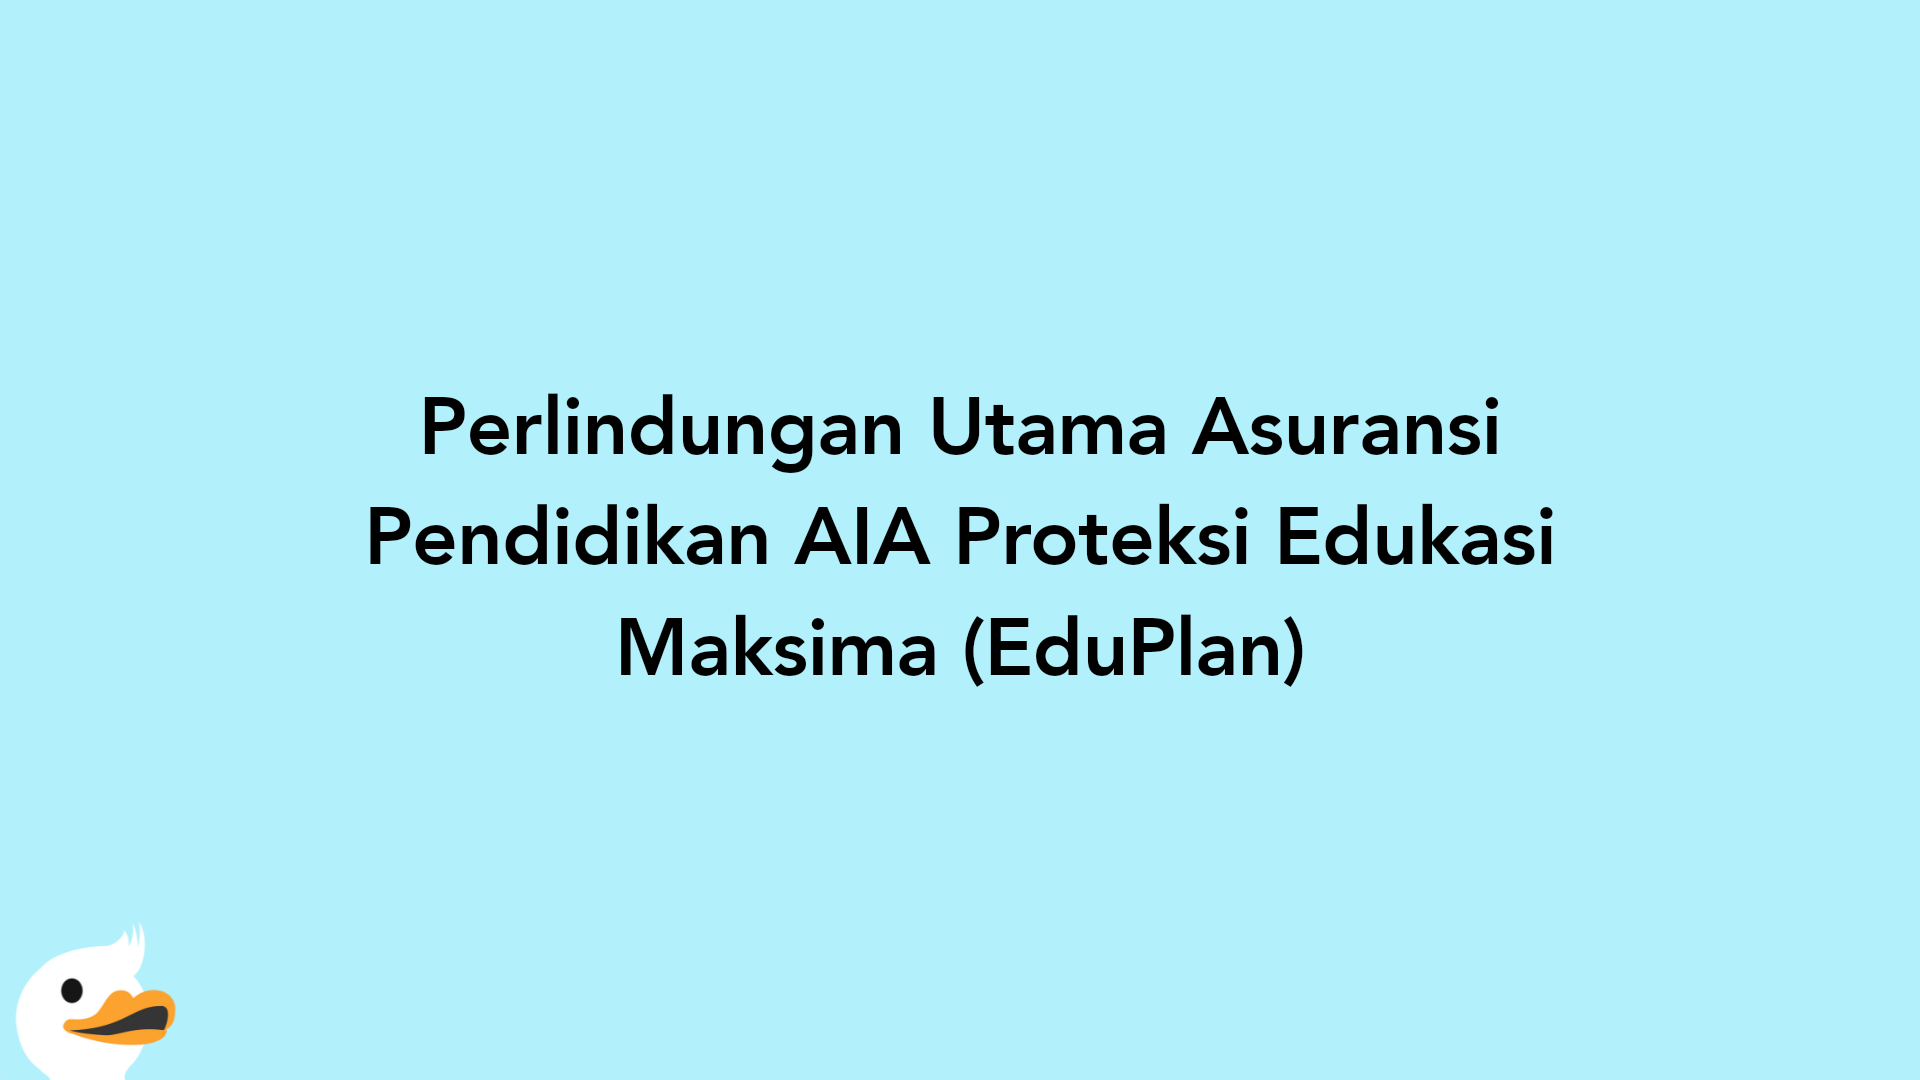 Perlindungan Utama Asuransi Pendidikan AIA Proteksi Edukasi Maksima (EduPlan)